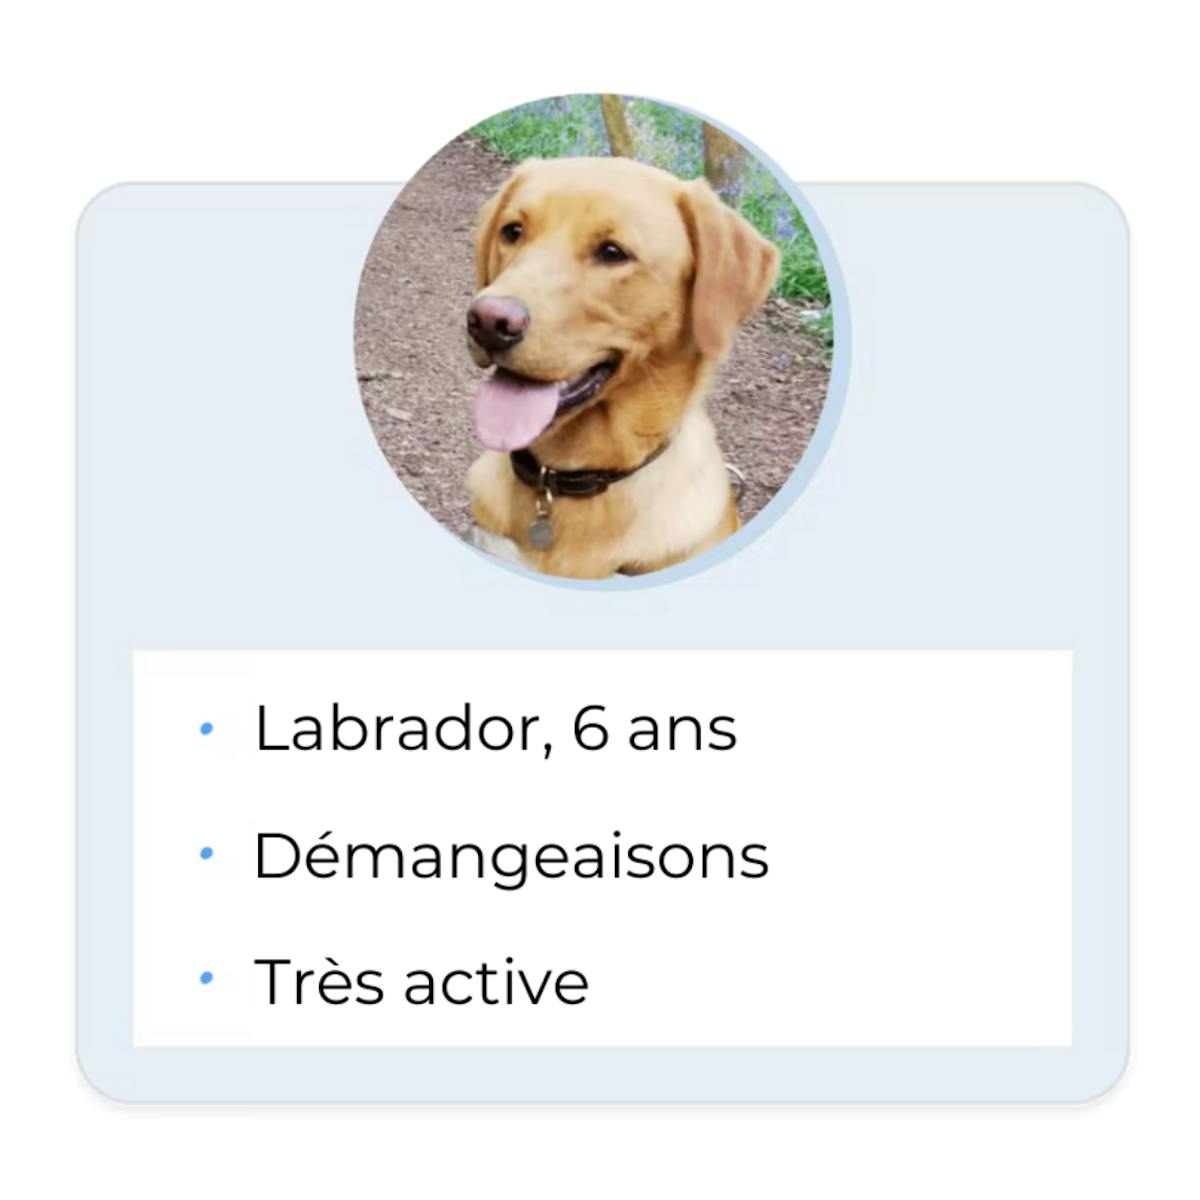 Labrador, 6 ans, Démangeaisons, Très active